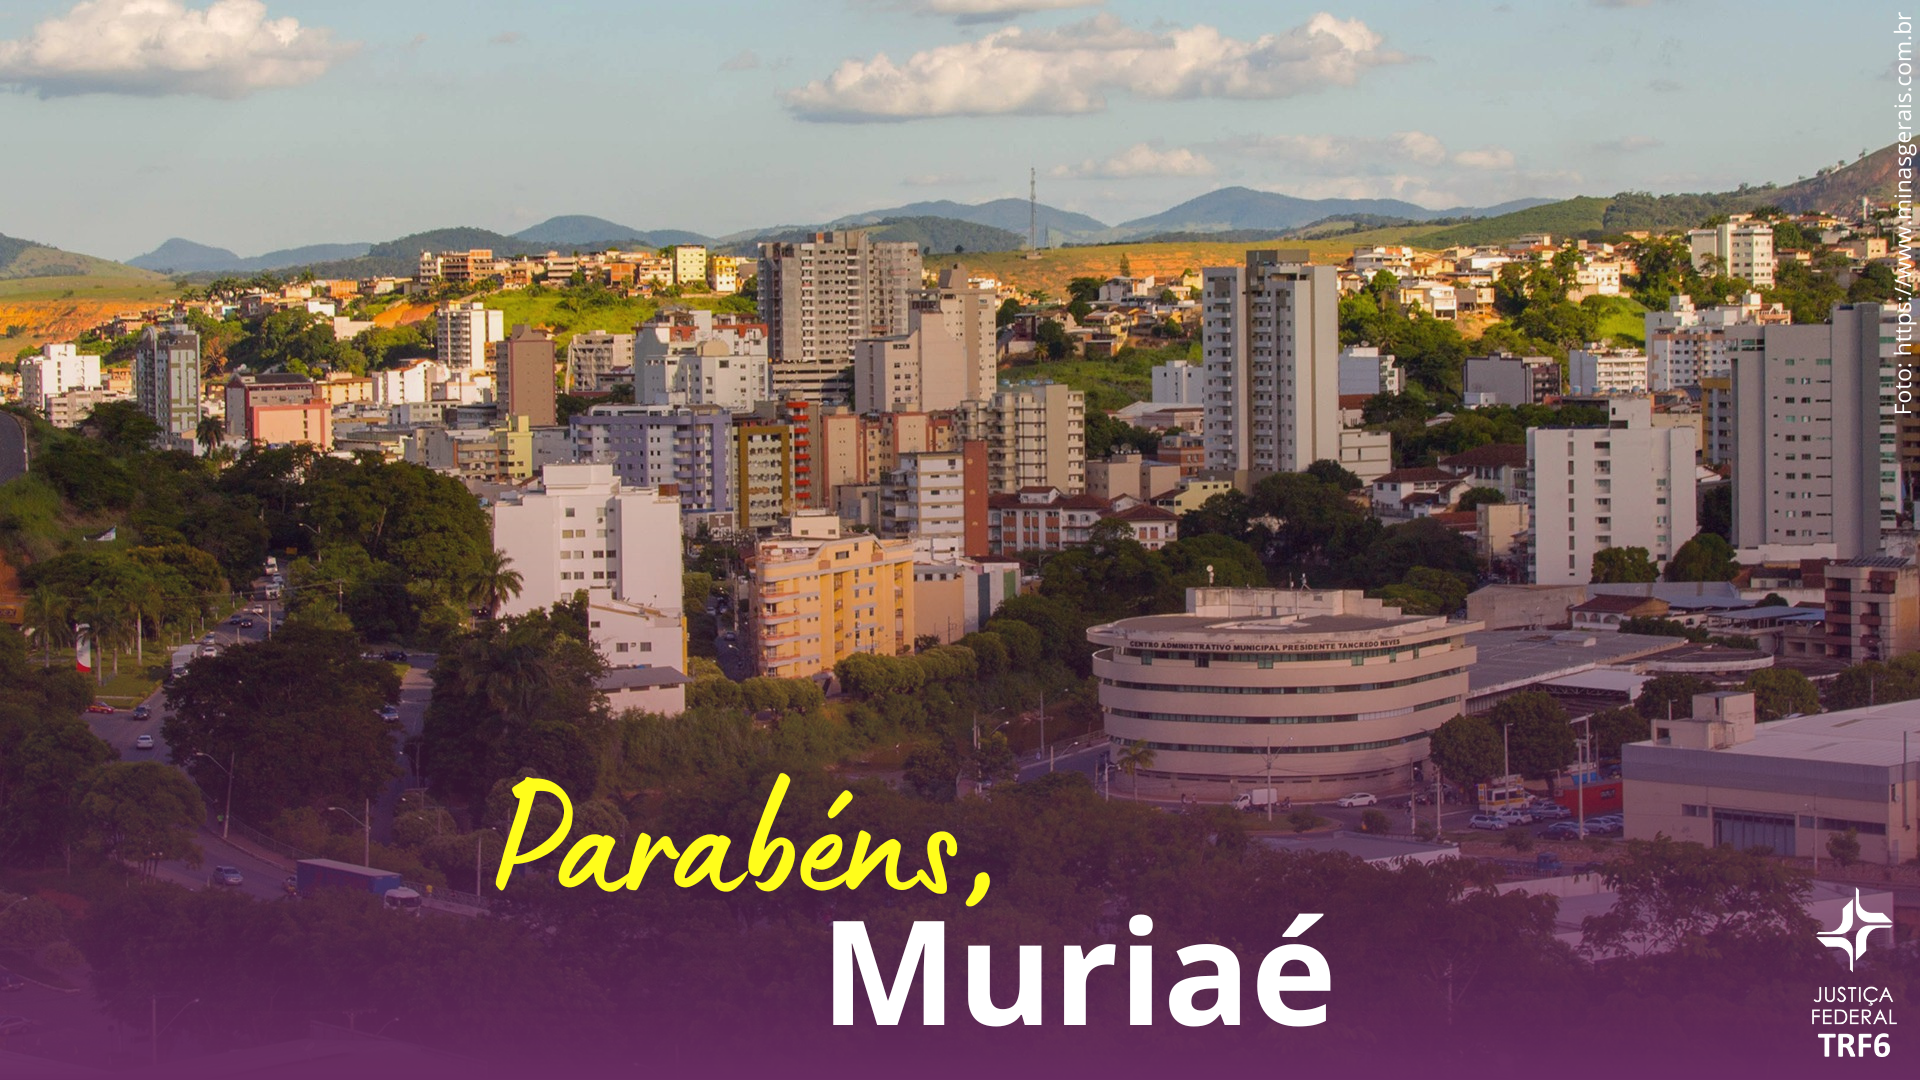 Fotografia colorida da vista da cidade de Muriaé, na Zona da Mata mineira. Na parte inferior o seguinte texto: Parabéns, Muriaé.